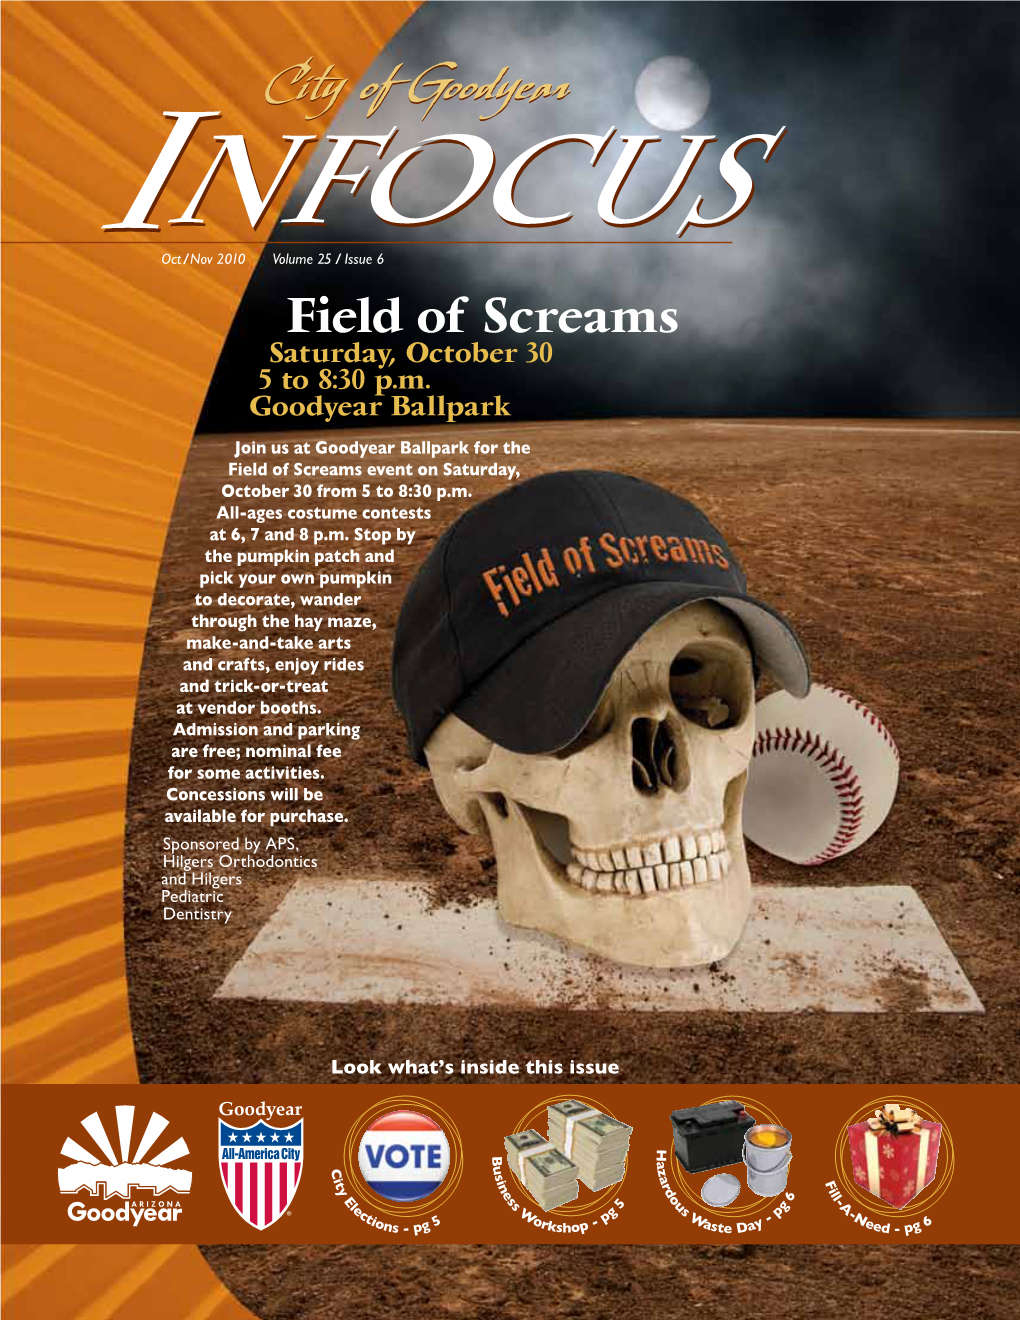 Field of Screams Saturday, October 30 5 to 8:30 P.M